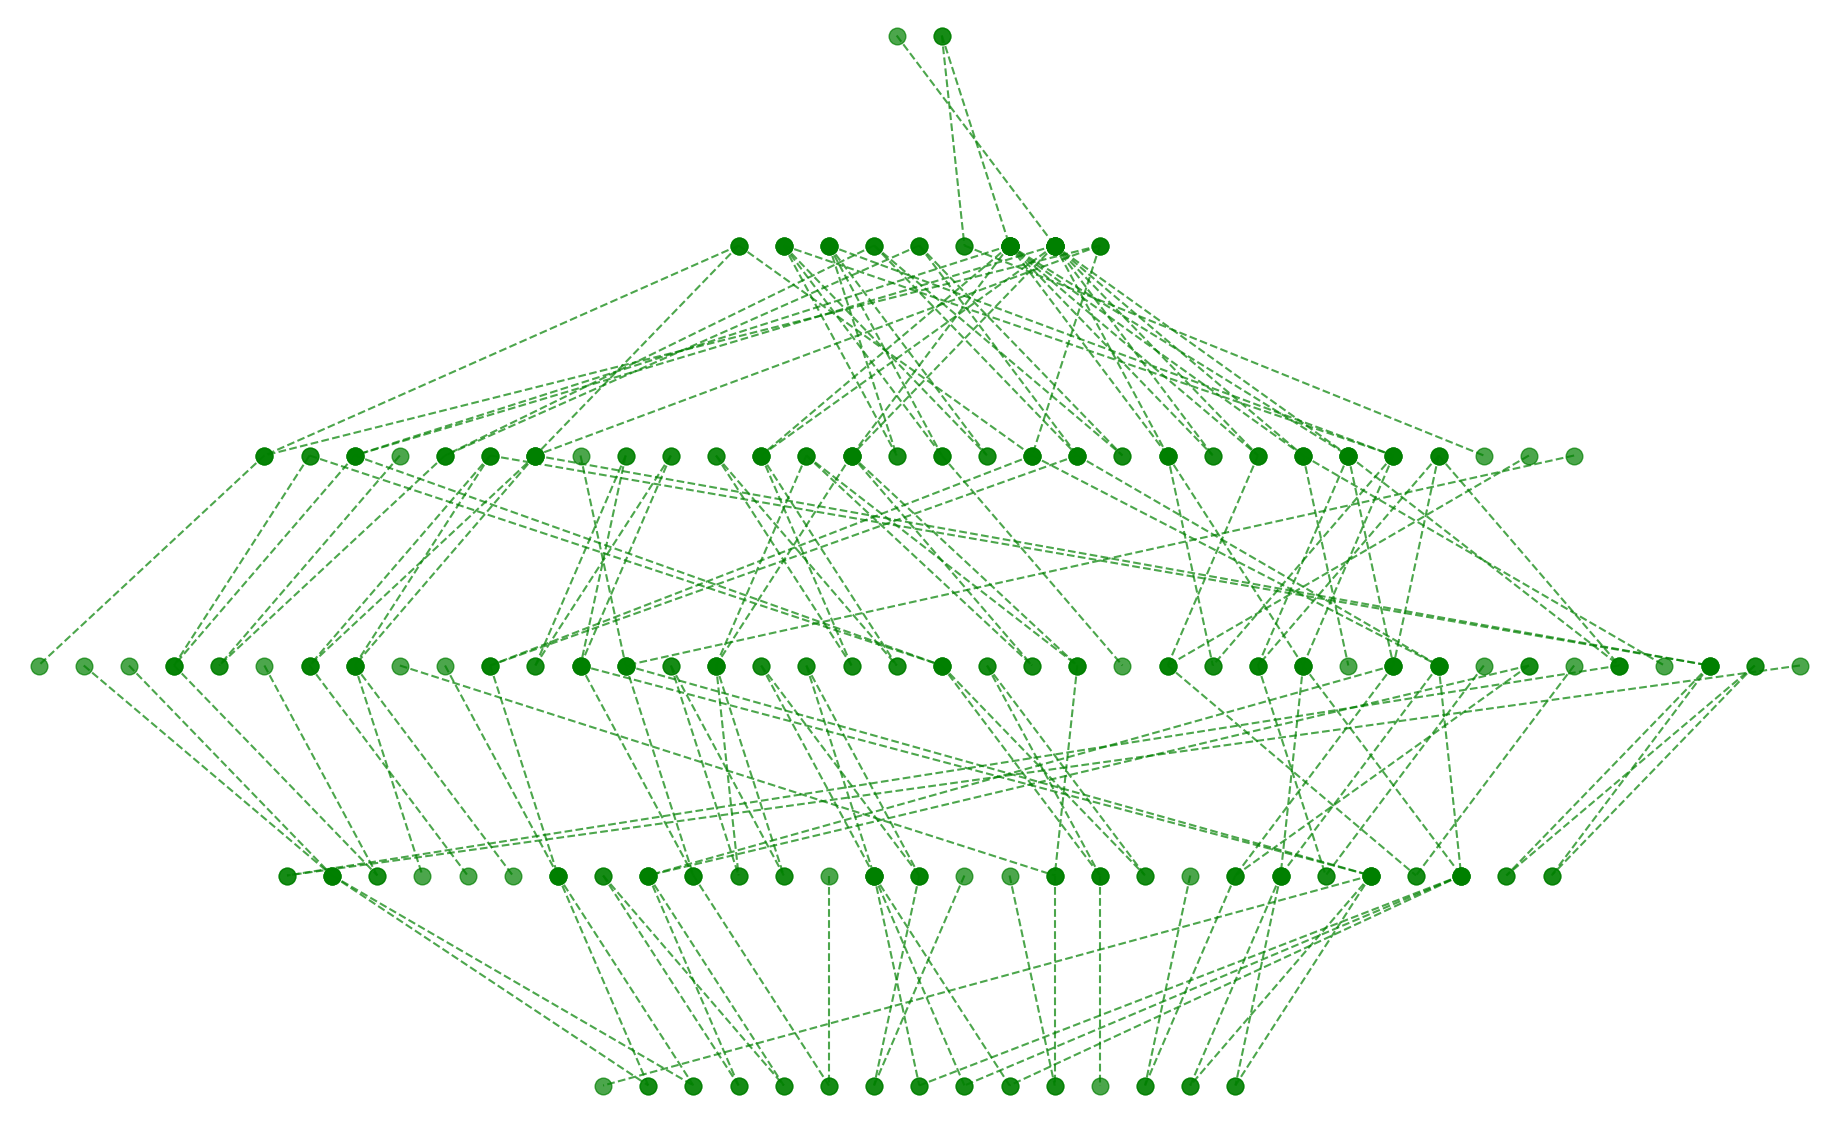 Рис.2. Граф с оптимизацией числа пересечений сортировкой узлов по алфавиту